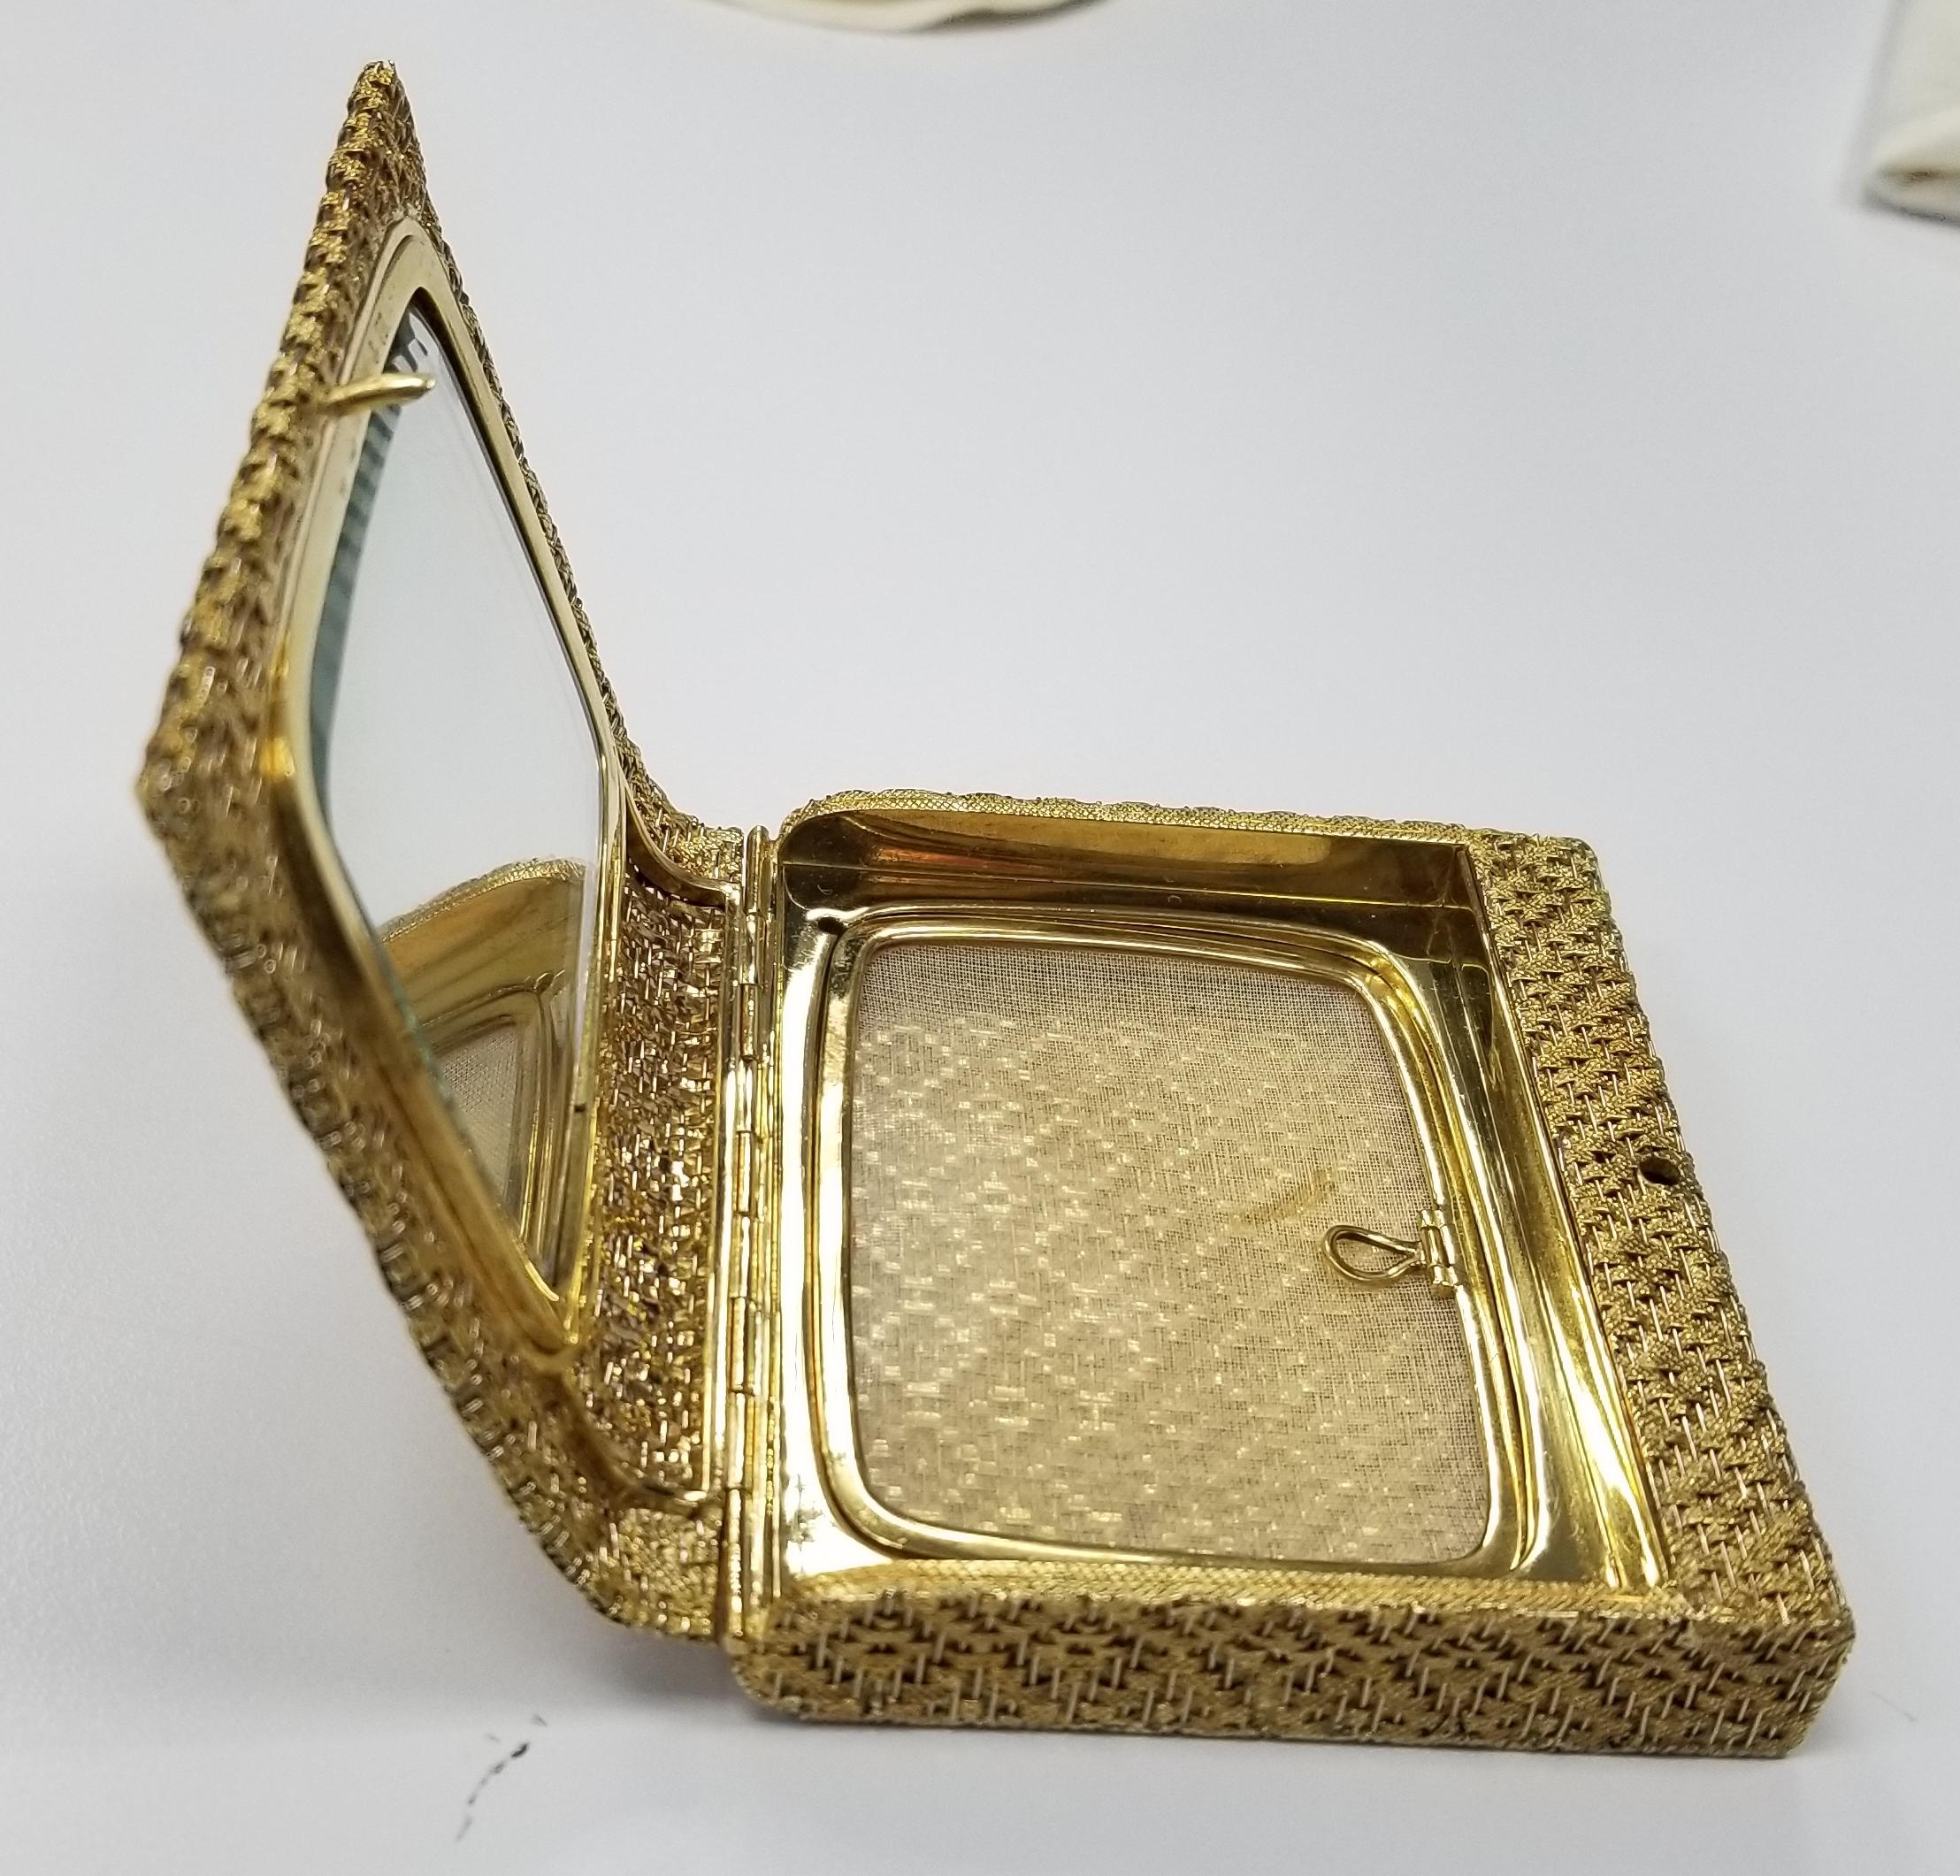 Diese 1980er Tiffany & Co. kompakt ist von italienischer Herkunft, in Handarbeit in massivem 18K Gelbgold, mit einem Gewicht von 194 Gramm und misst 3,25 